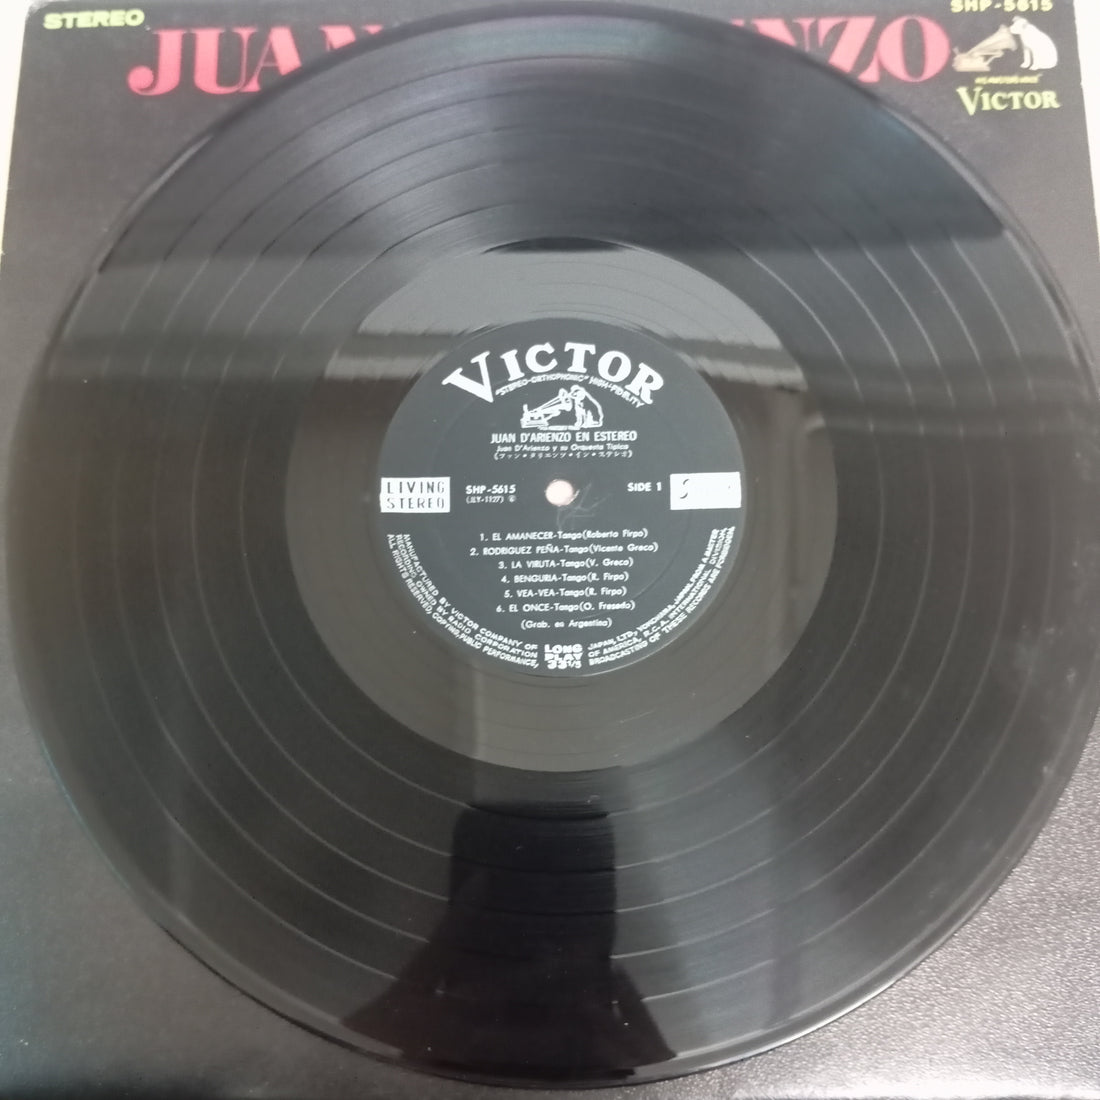 Juan D'Arienzo Y Su Orquesta Típica - Juan D’Arienzo En Estereo (Vinyl) (VG+)